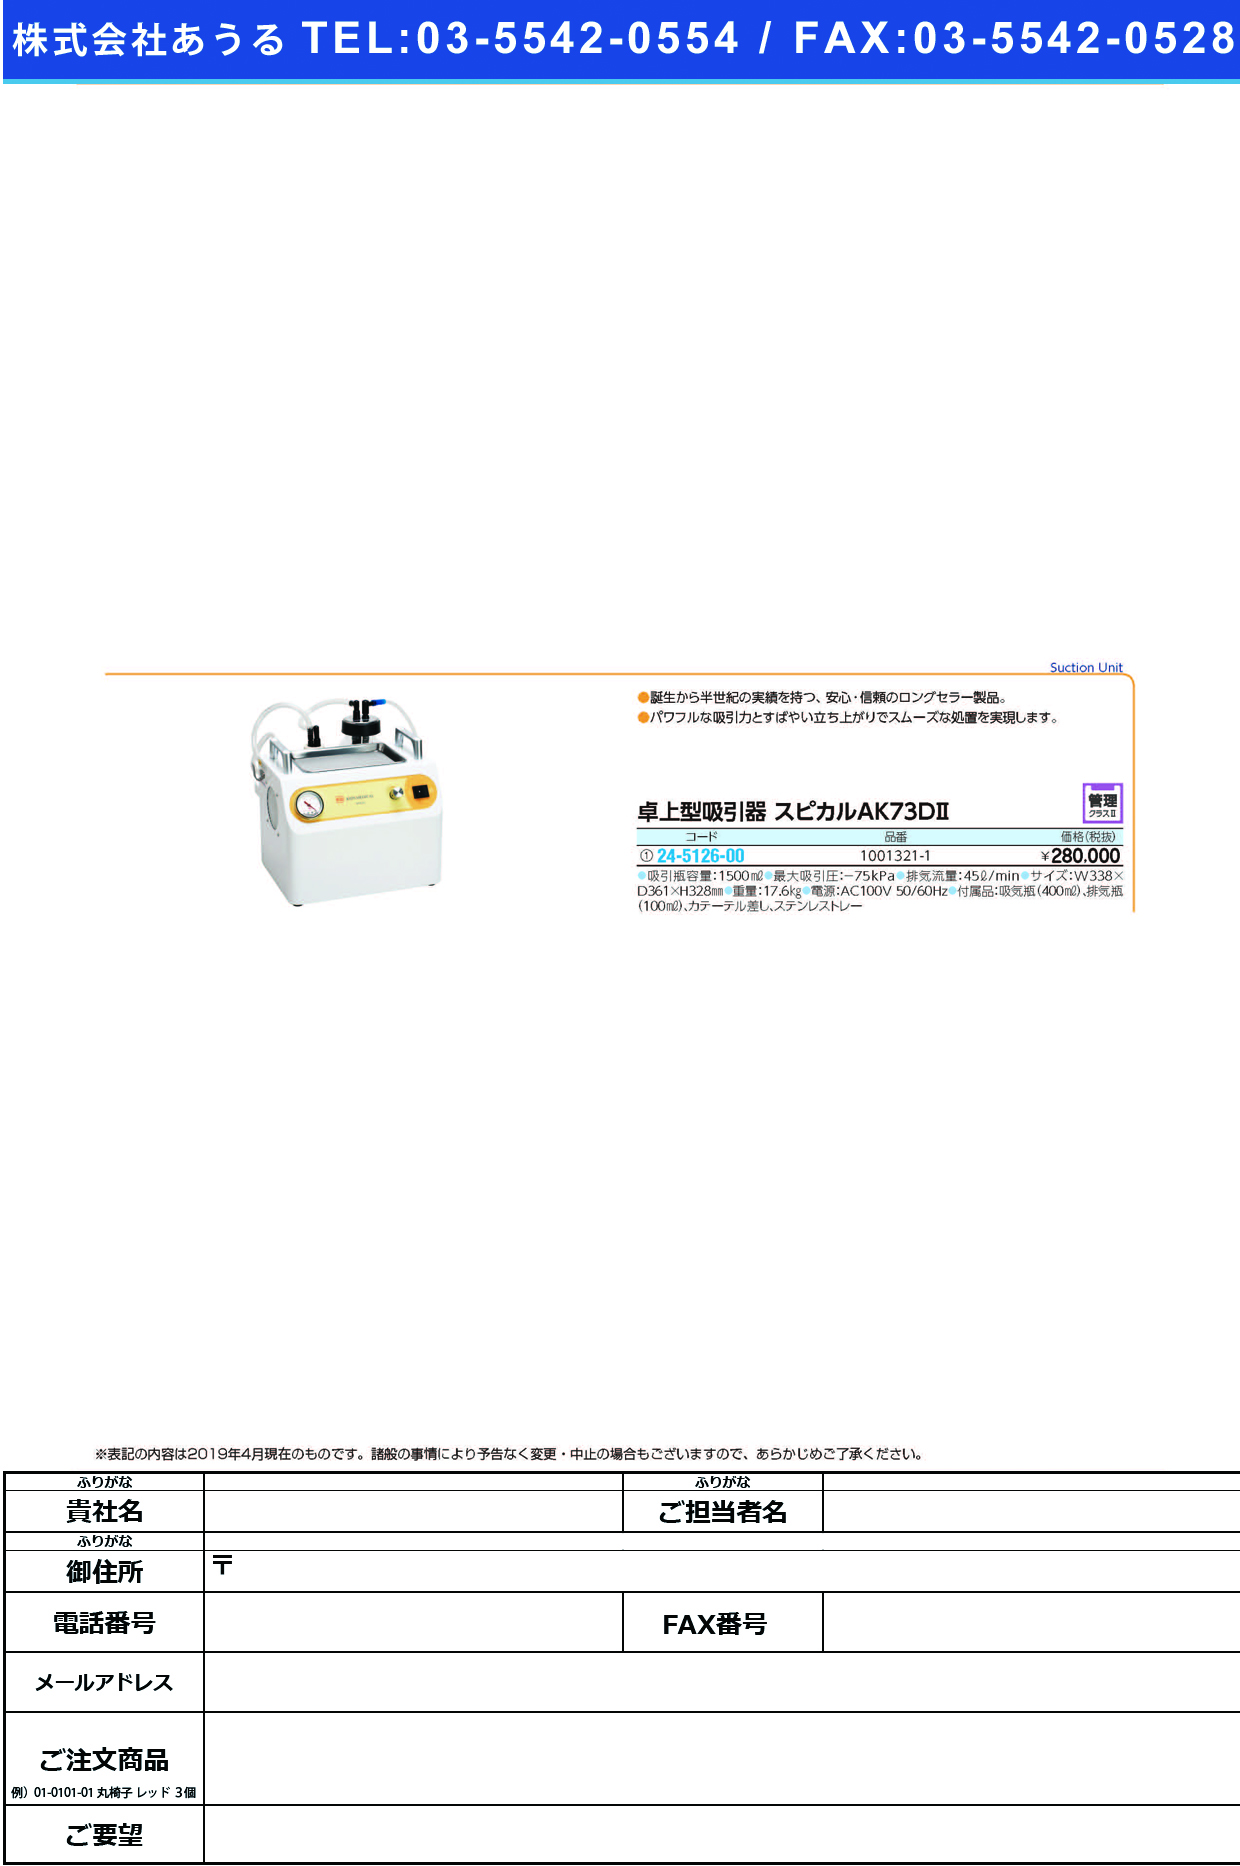 (24-5126-00)卓上型吸引器スピカル（ＡＫ－７３Ｄ） 1001321-1 ﾀｸｼﾞｮｳｷｭｳｲﾝｲｽﾋﾟｶﾙ【1台単位】【2019年カタログ商品】